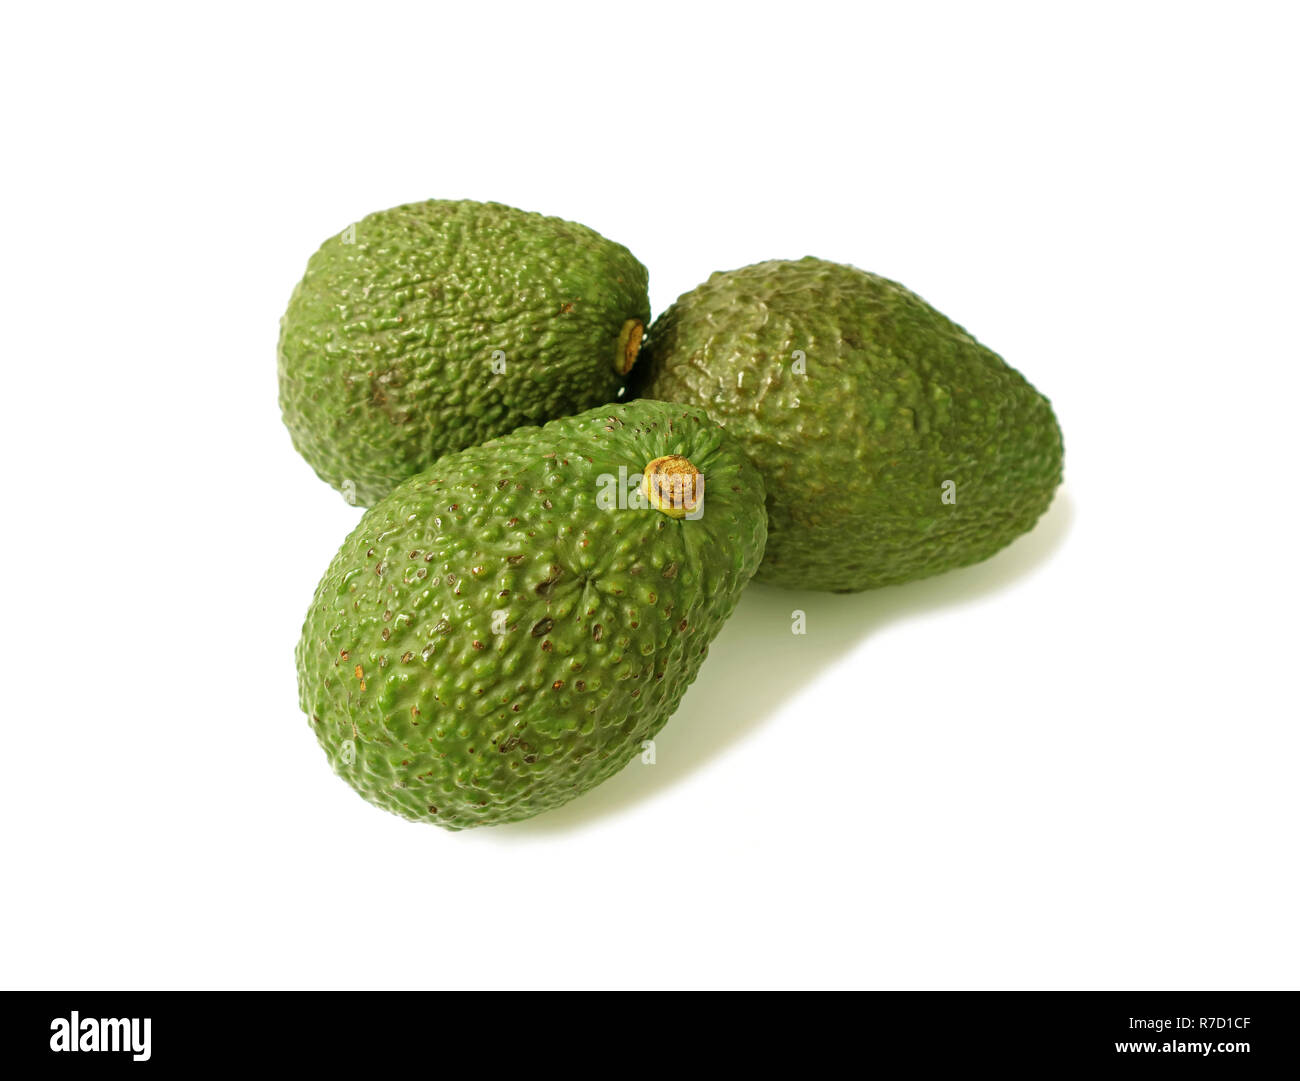 Geschlossen bis Drei grüne Holprigen hass Avocado ganze Früchte isoliert auf weißem Hintergrund Stockfoto